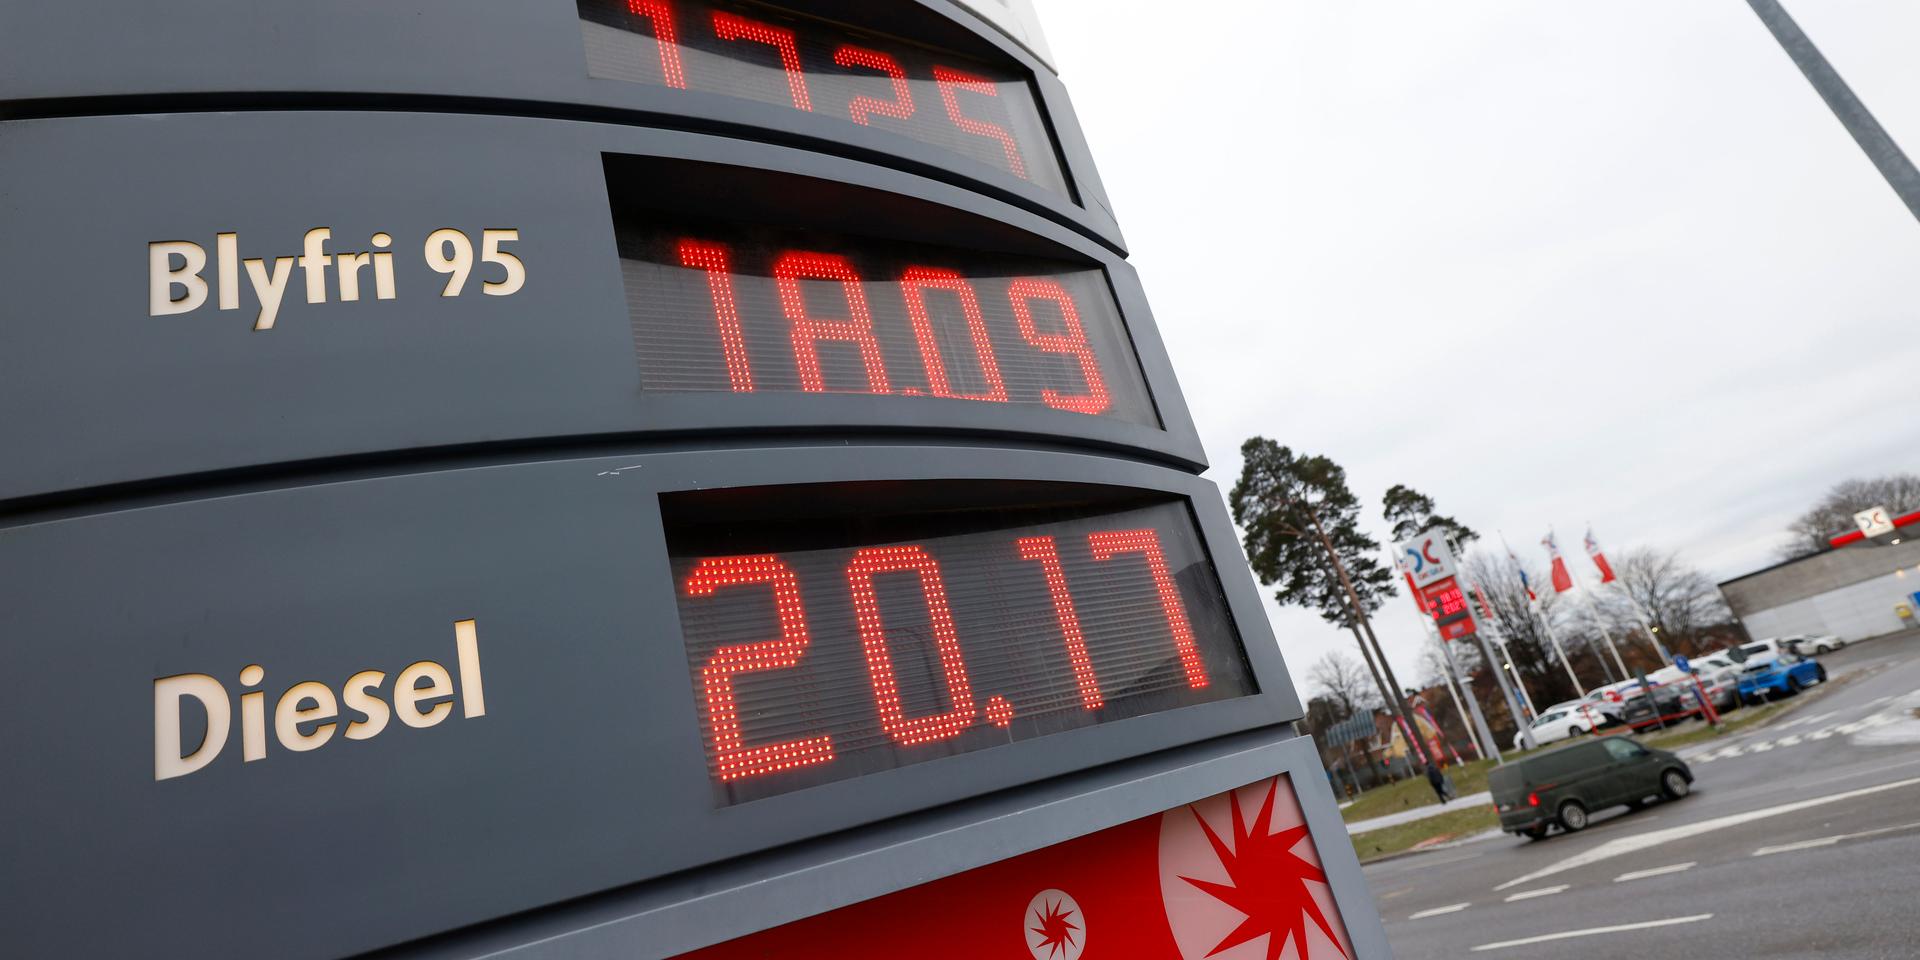 Dyrare bränslepriser är ett direkt hot mot flera företag, menar insändarskribenten.